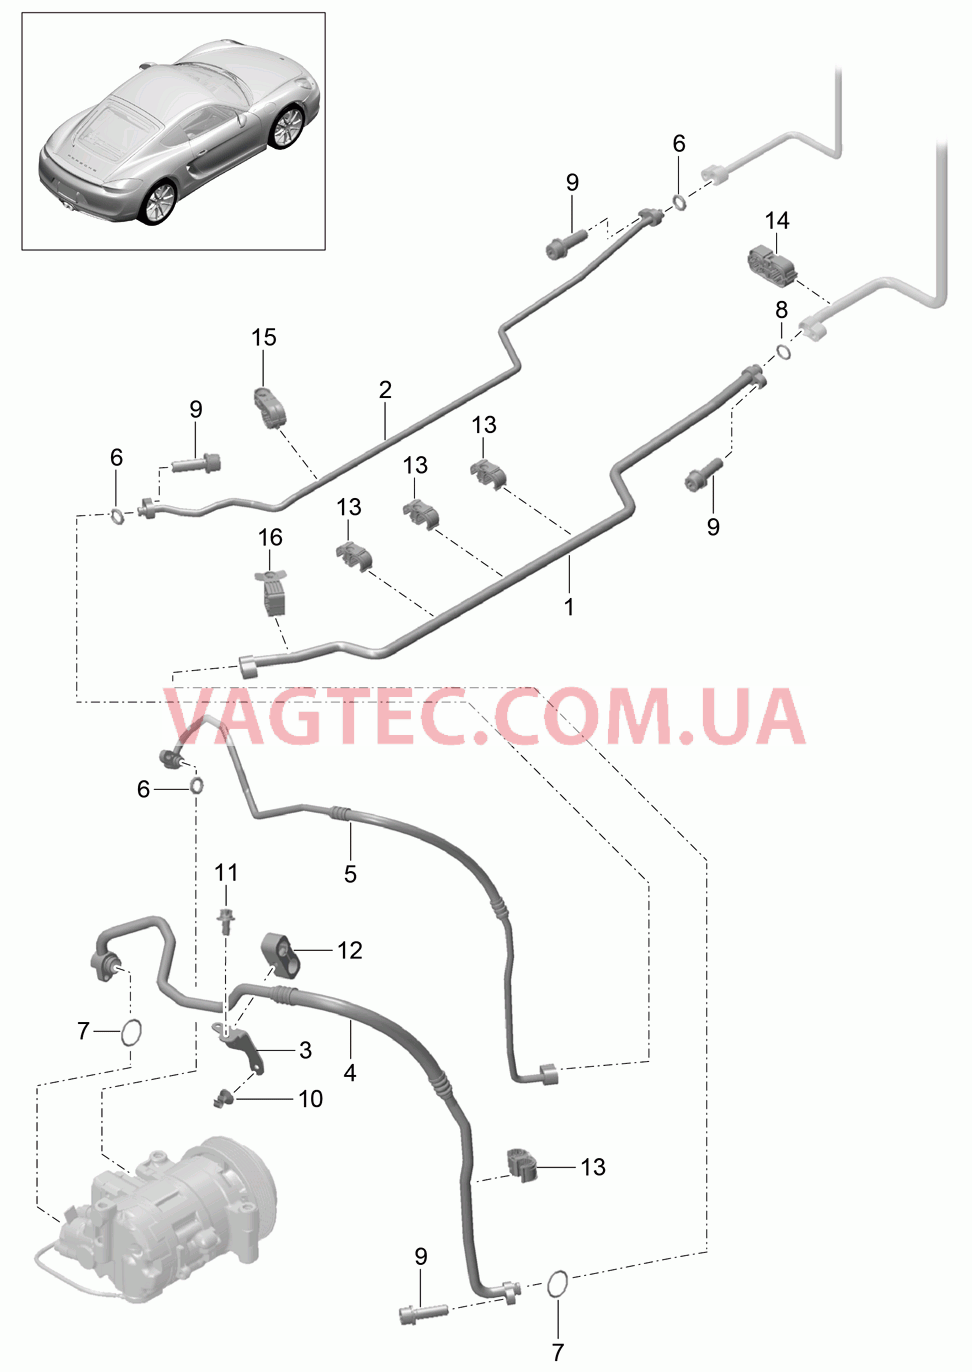 813-025 Циркуляция охлаждающей жидкости, Днище кузова, и, Задняя подвеска для PORSCHE Cayman 2014-2016